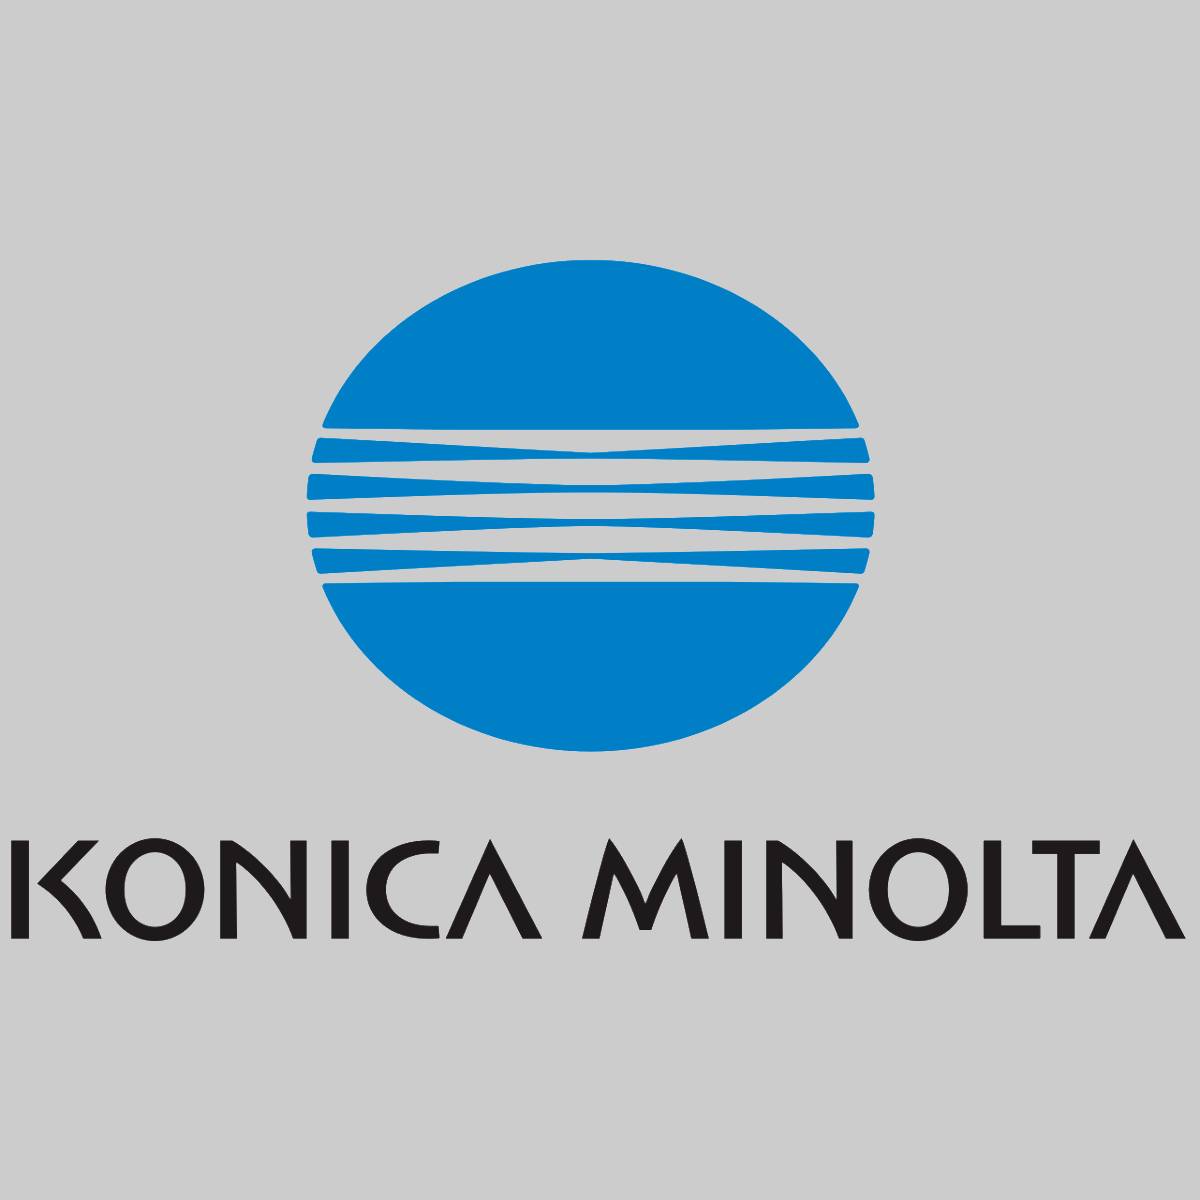 "Original Konica Minolta Toner TNP24 Toner Black A32W021 Bizhub 20 P NEU OVP